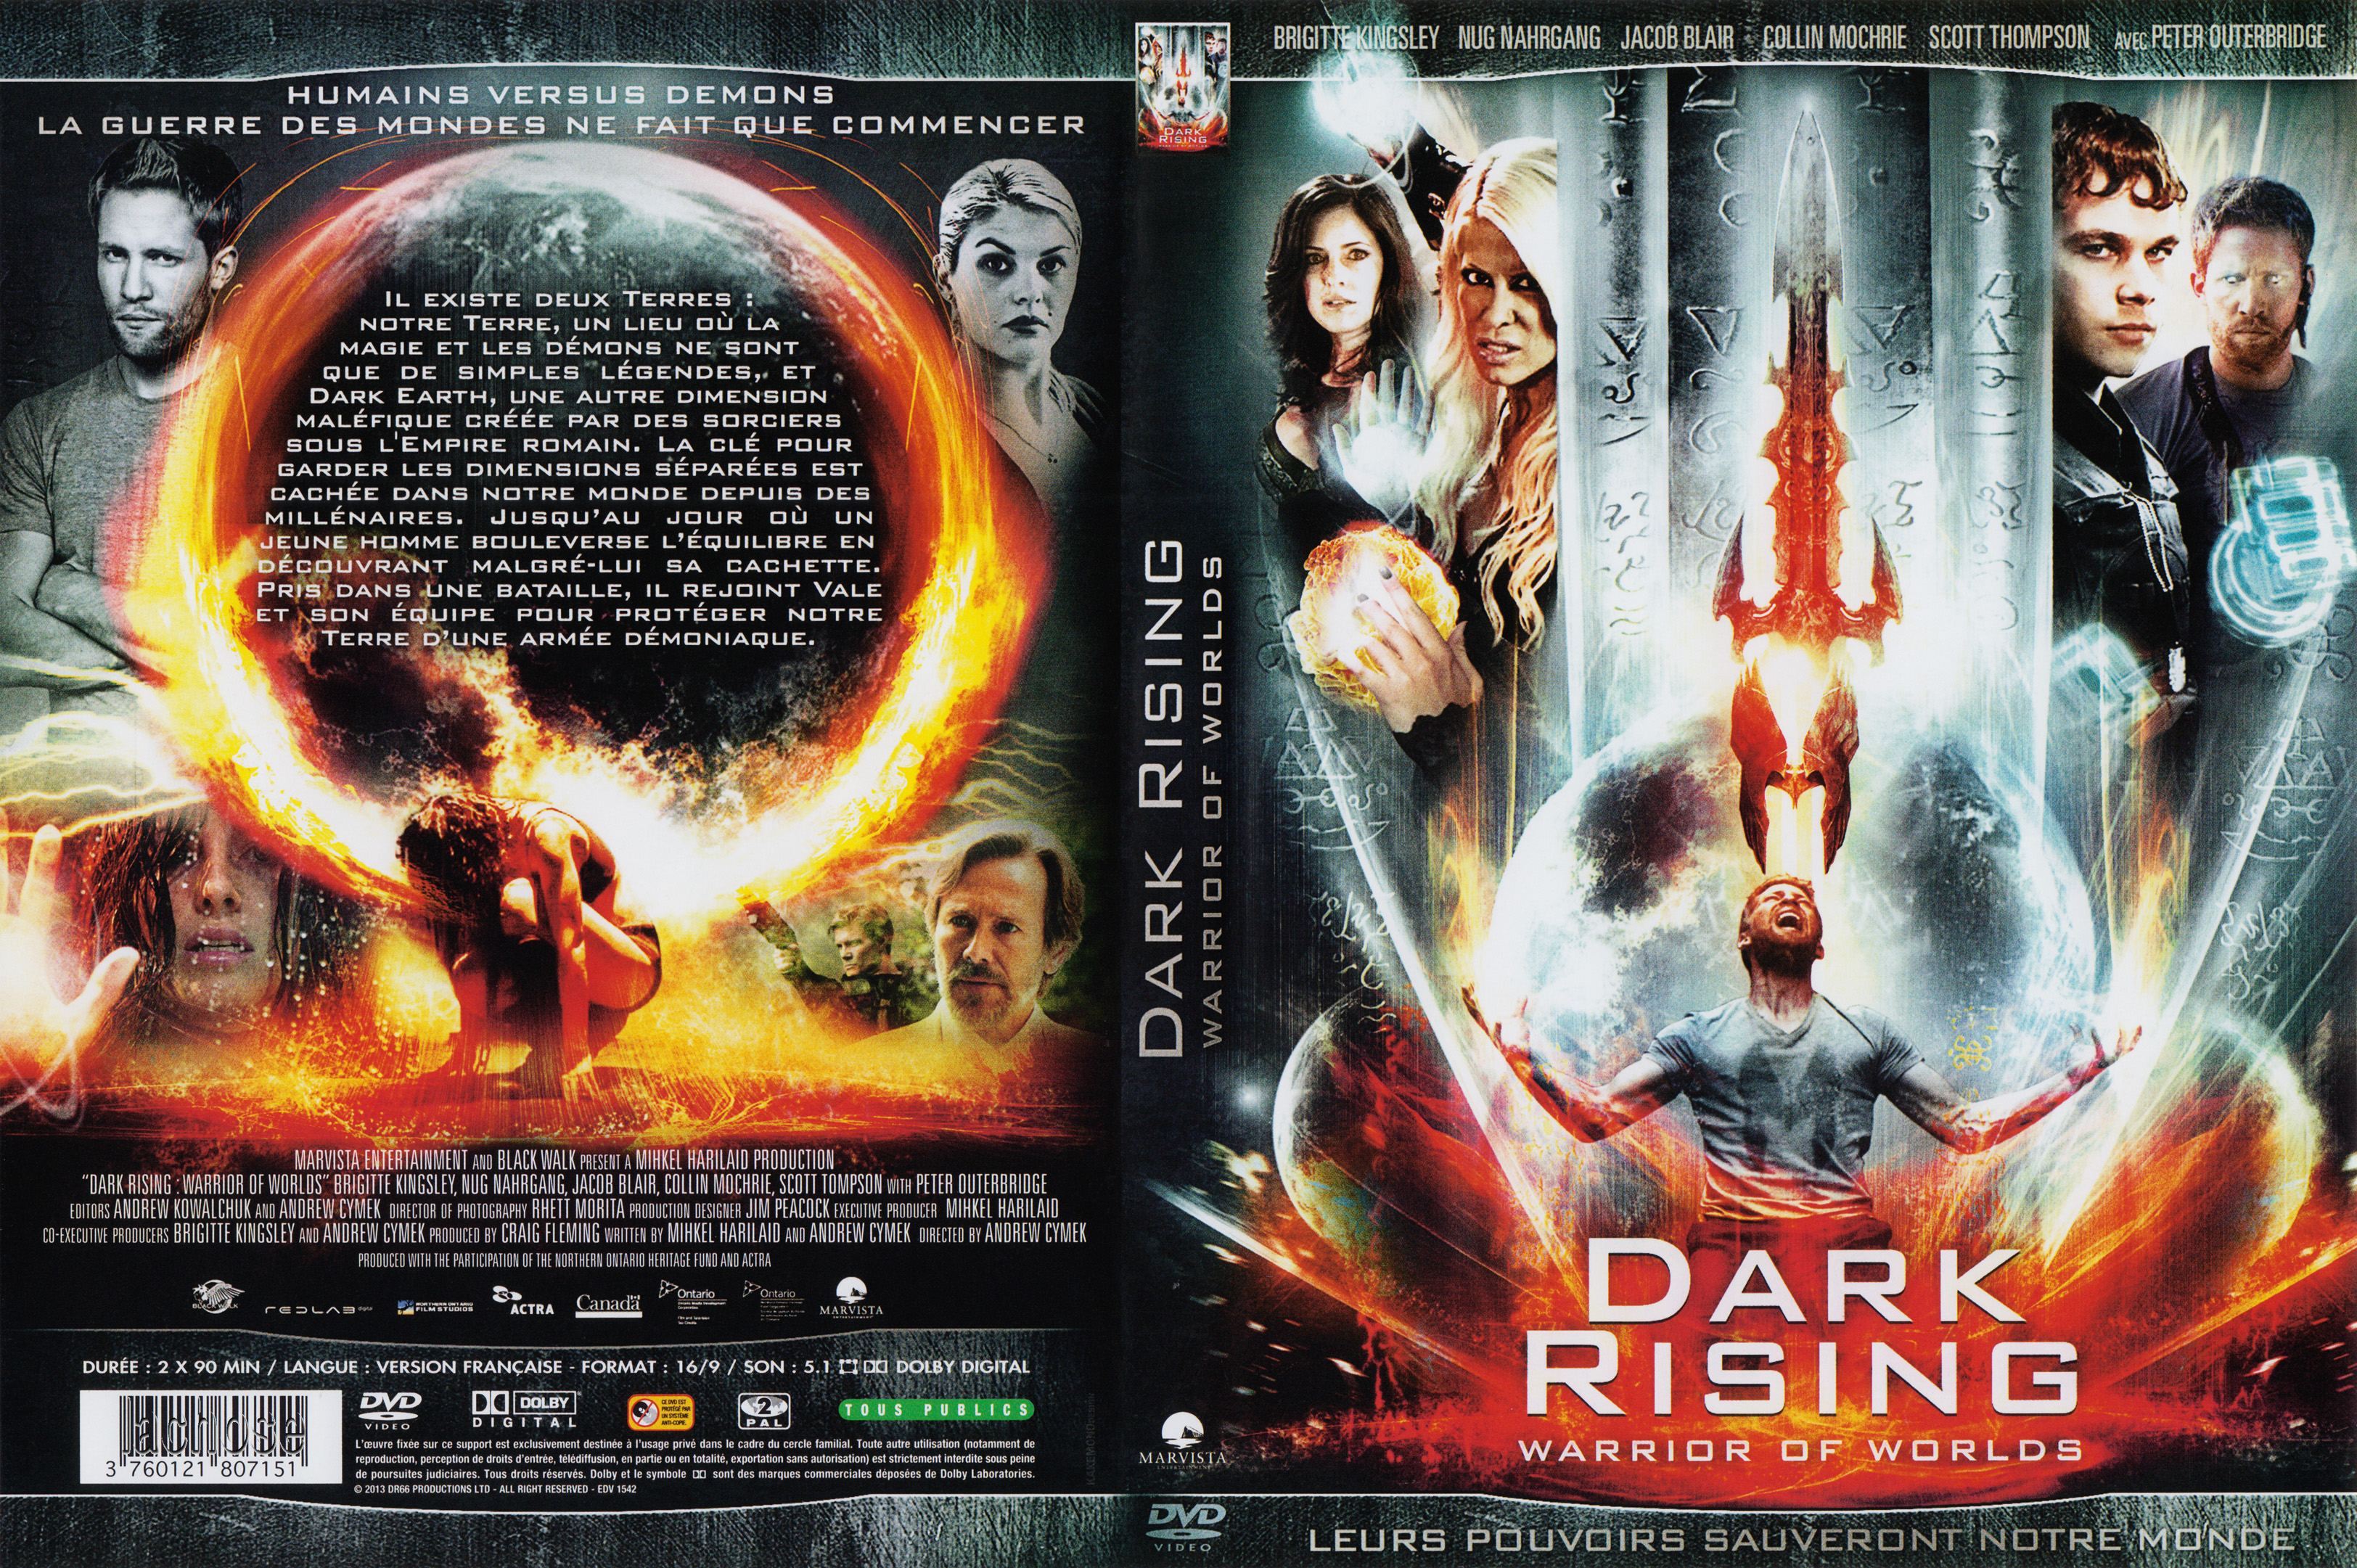 Jaquette DVD Dark rising